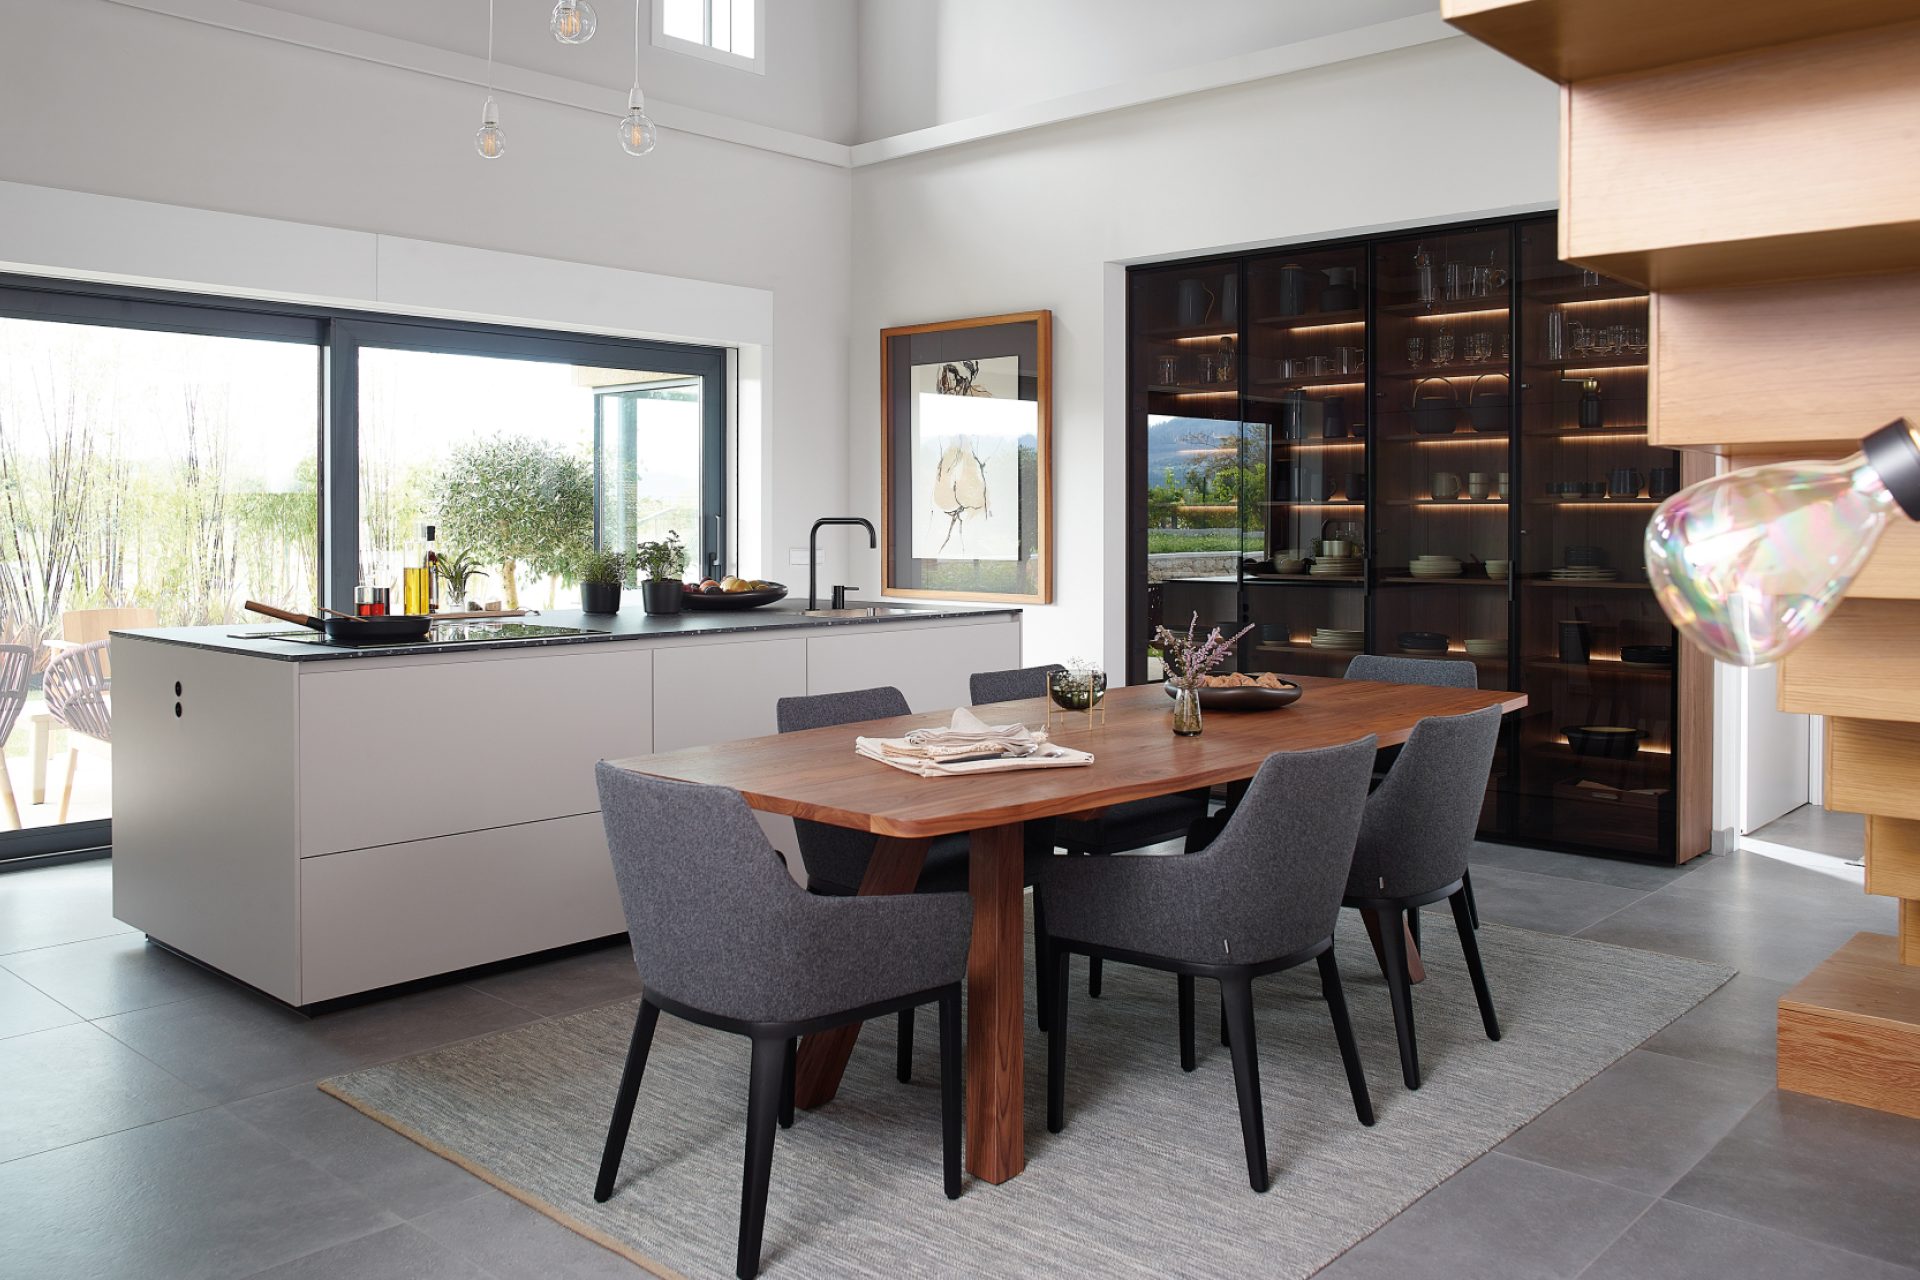 Îlot central de cuisine blanche ouverte sur salle à manger composée d'une table en bois et de chaise en tissu avec buffet vitré